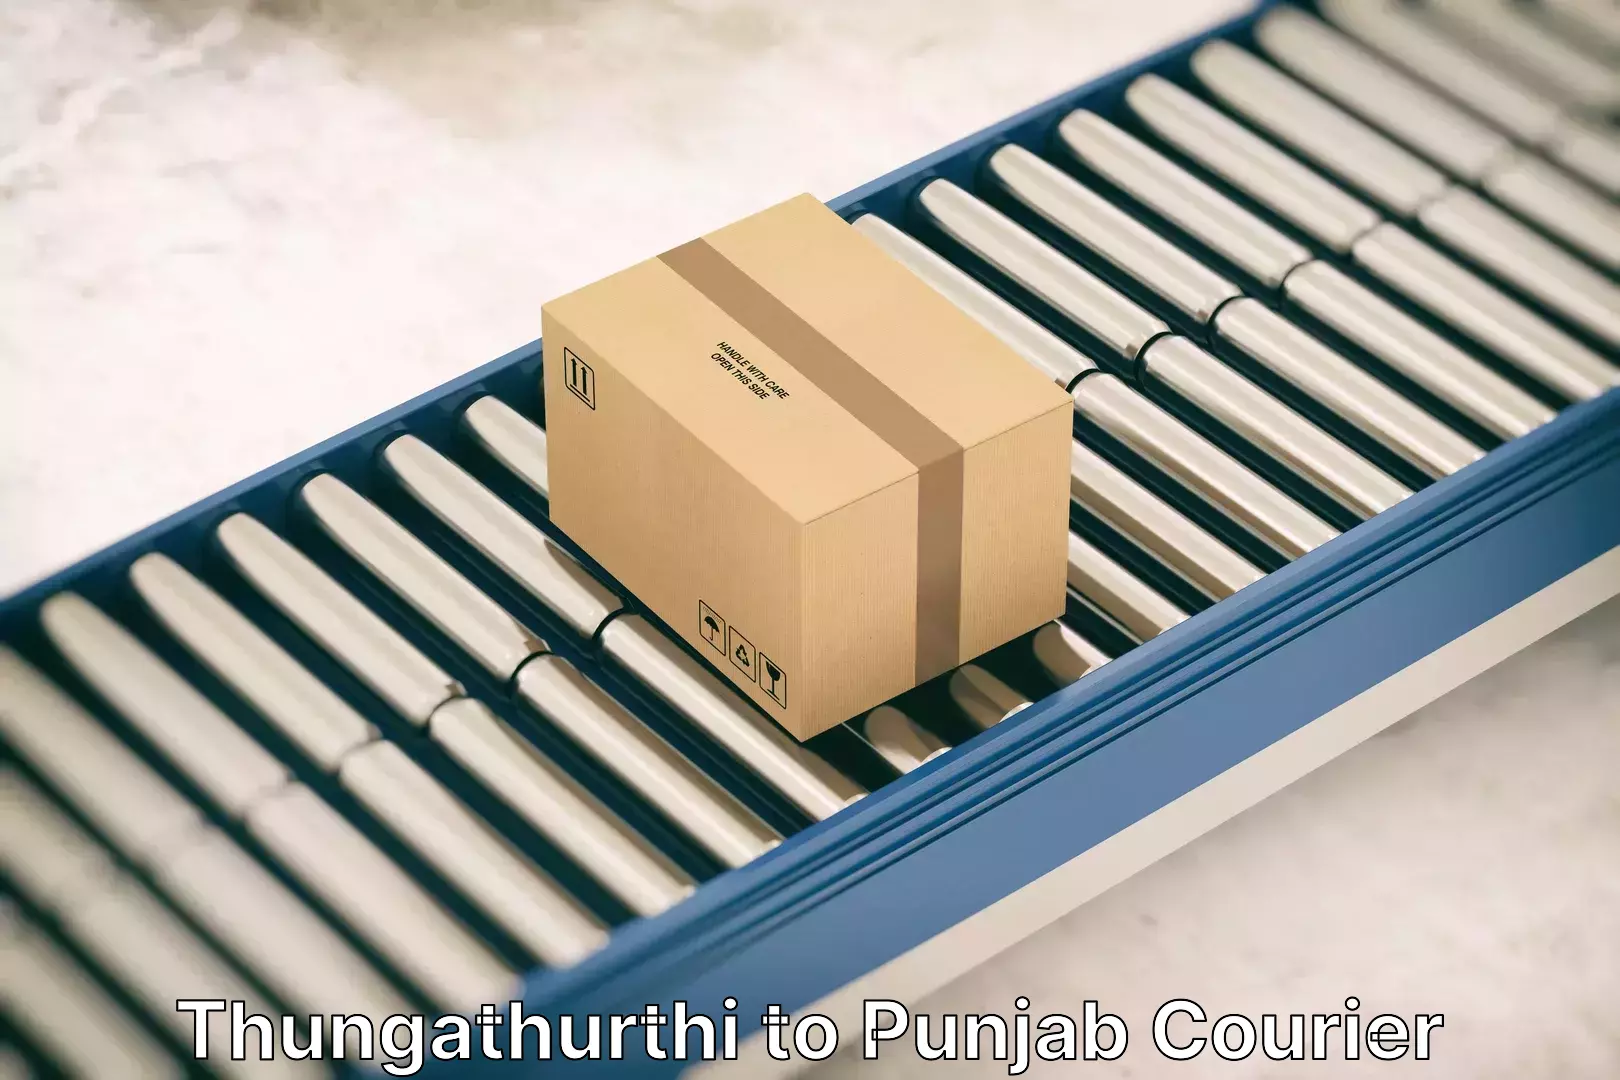 Specialized moving company Thungathurthi to Punjab